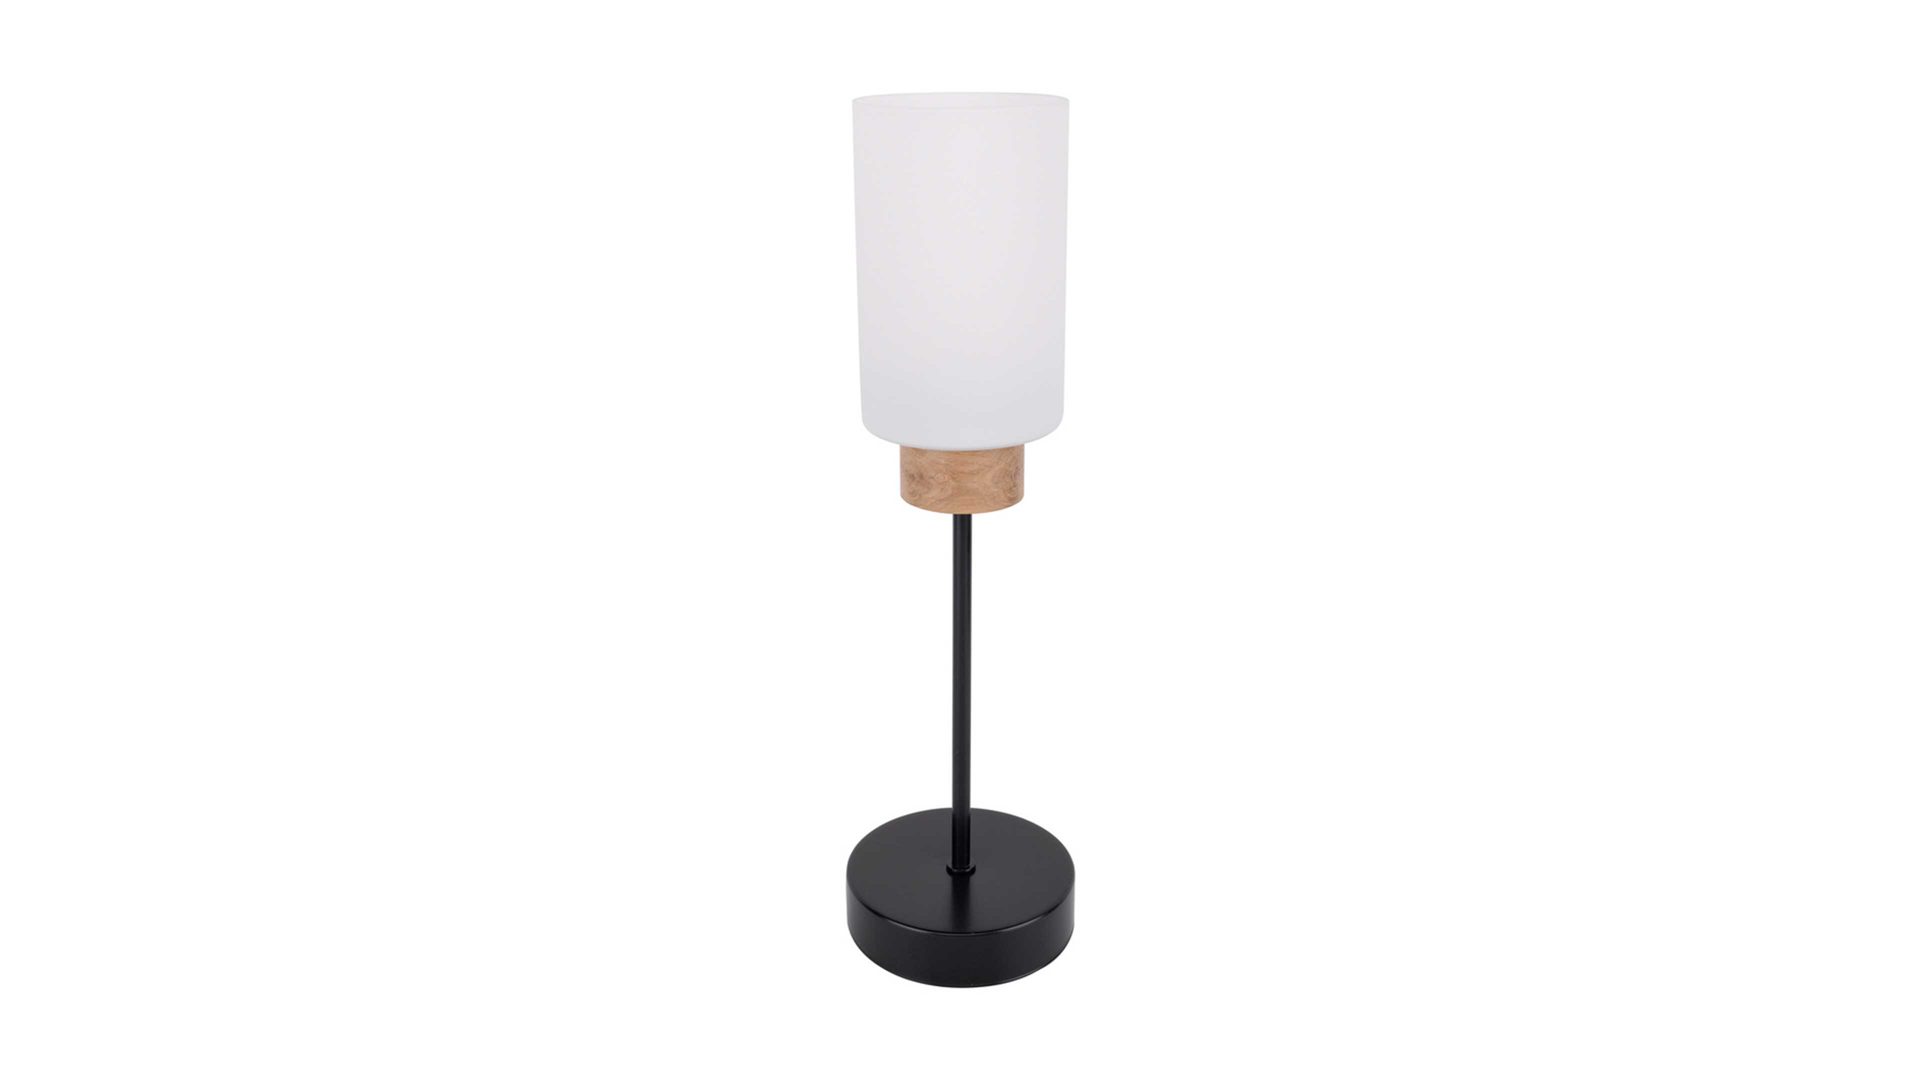 Tischleuchte Spot light aus Glas in Weiß SPOT LIGHT Leuchten Serie Mostar - Tischlampe weißes Glas & schwarzes Metall - Höhe ca. 42 cm